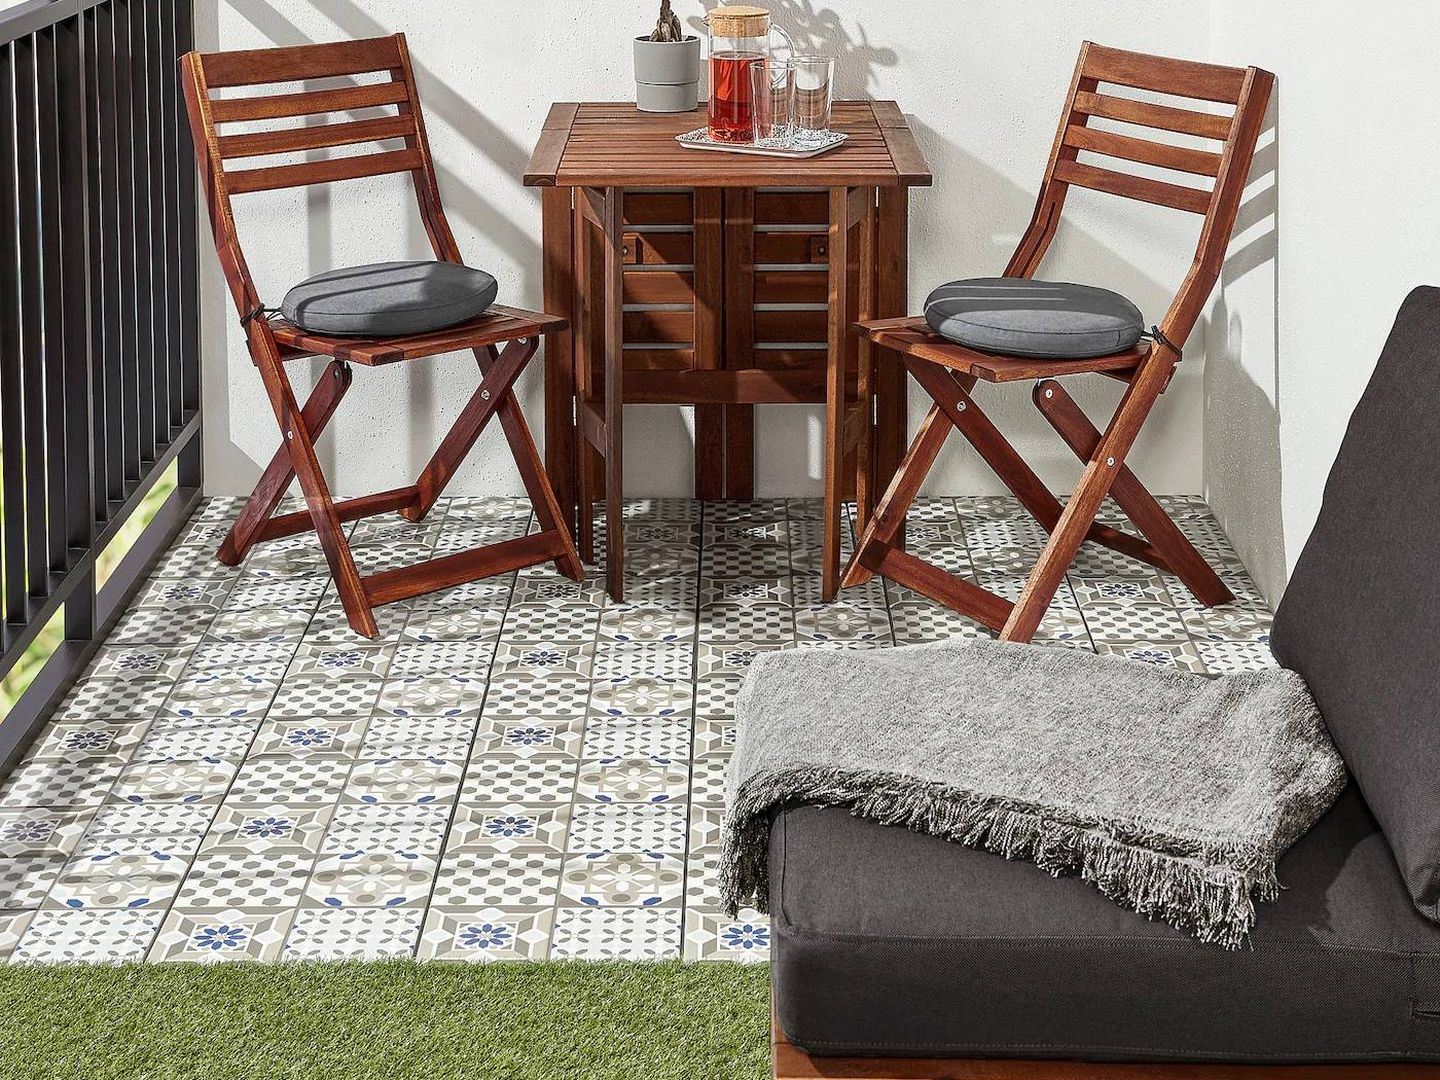 Puedes crear estilosas combinaciones con estos dos suelos de Ikea. (Cortesía)